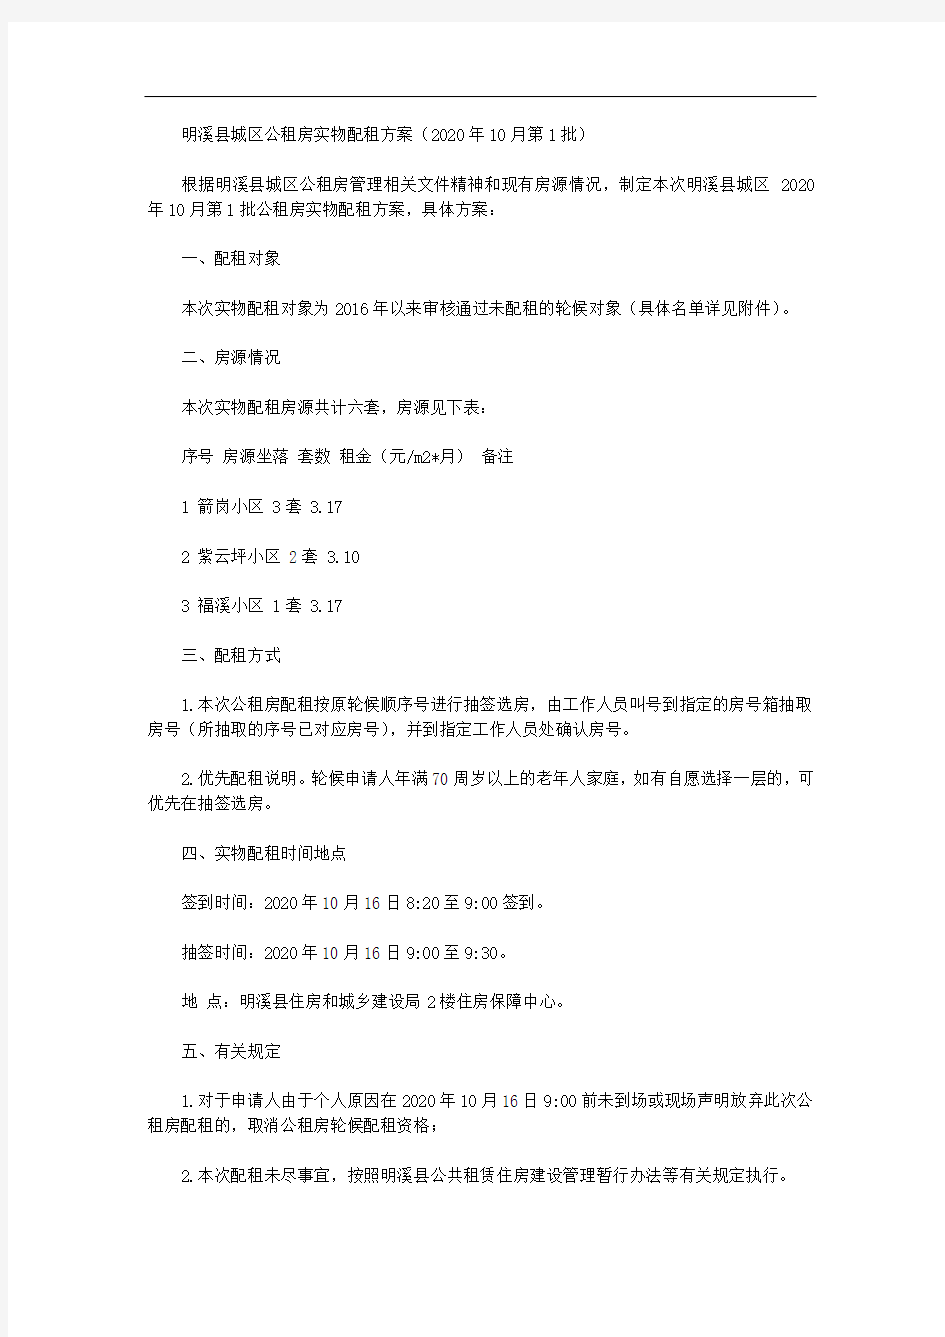 明溪县城区公租房实物配租方案(2020年10月第1批)